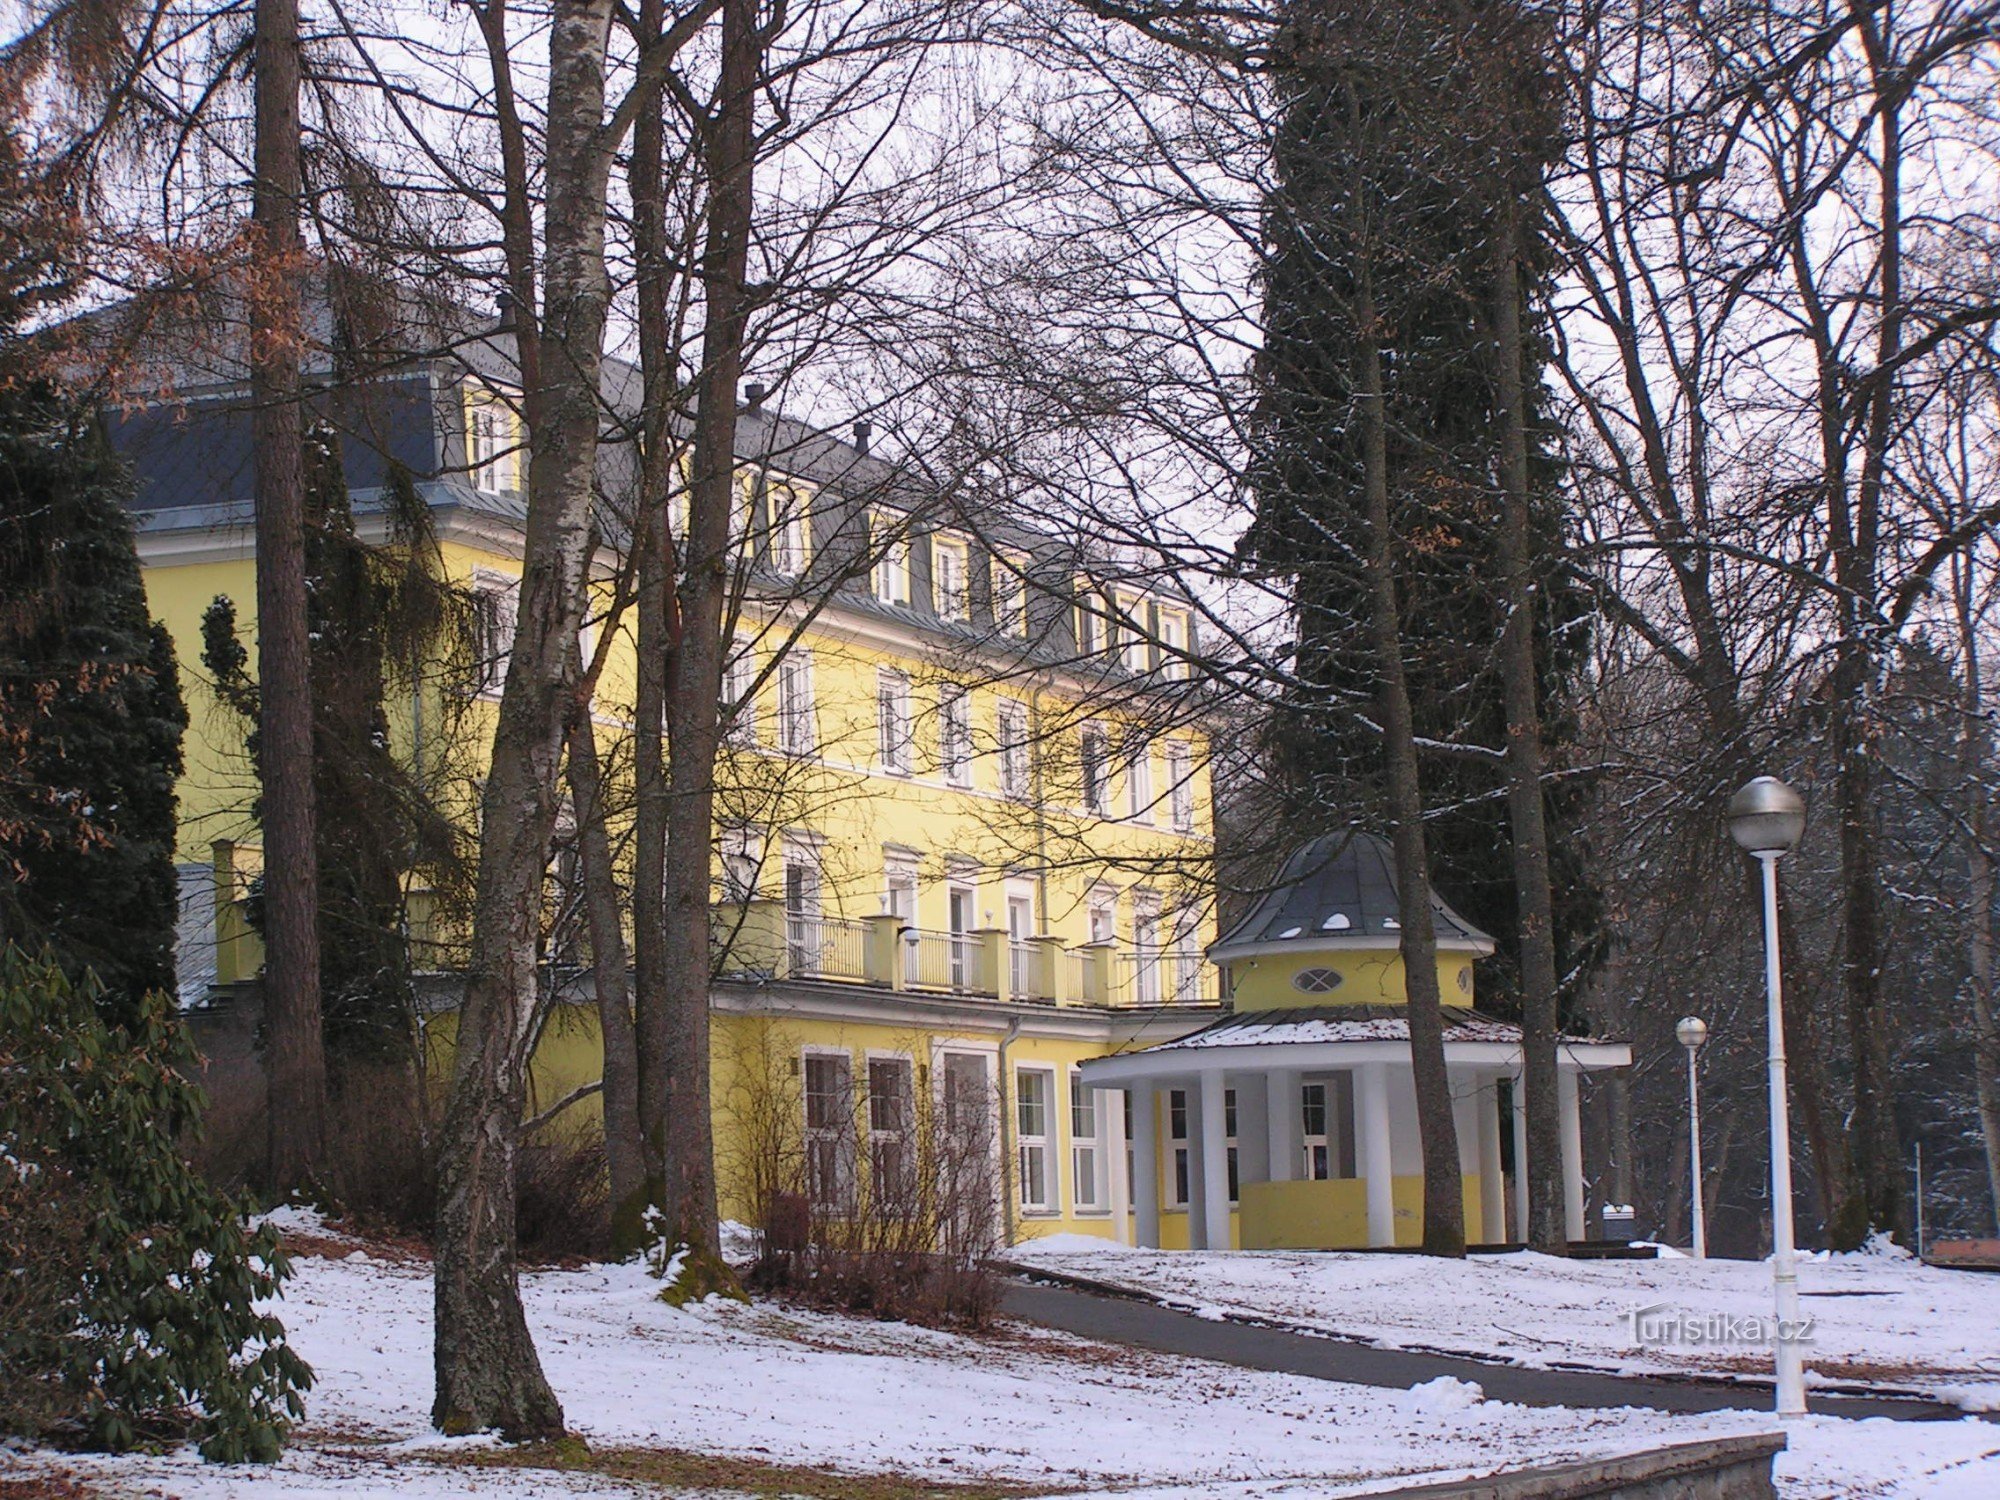 Hotel Prusík